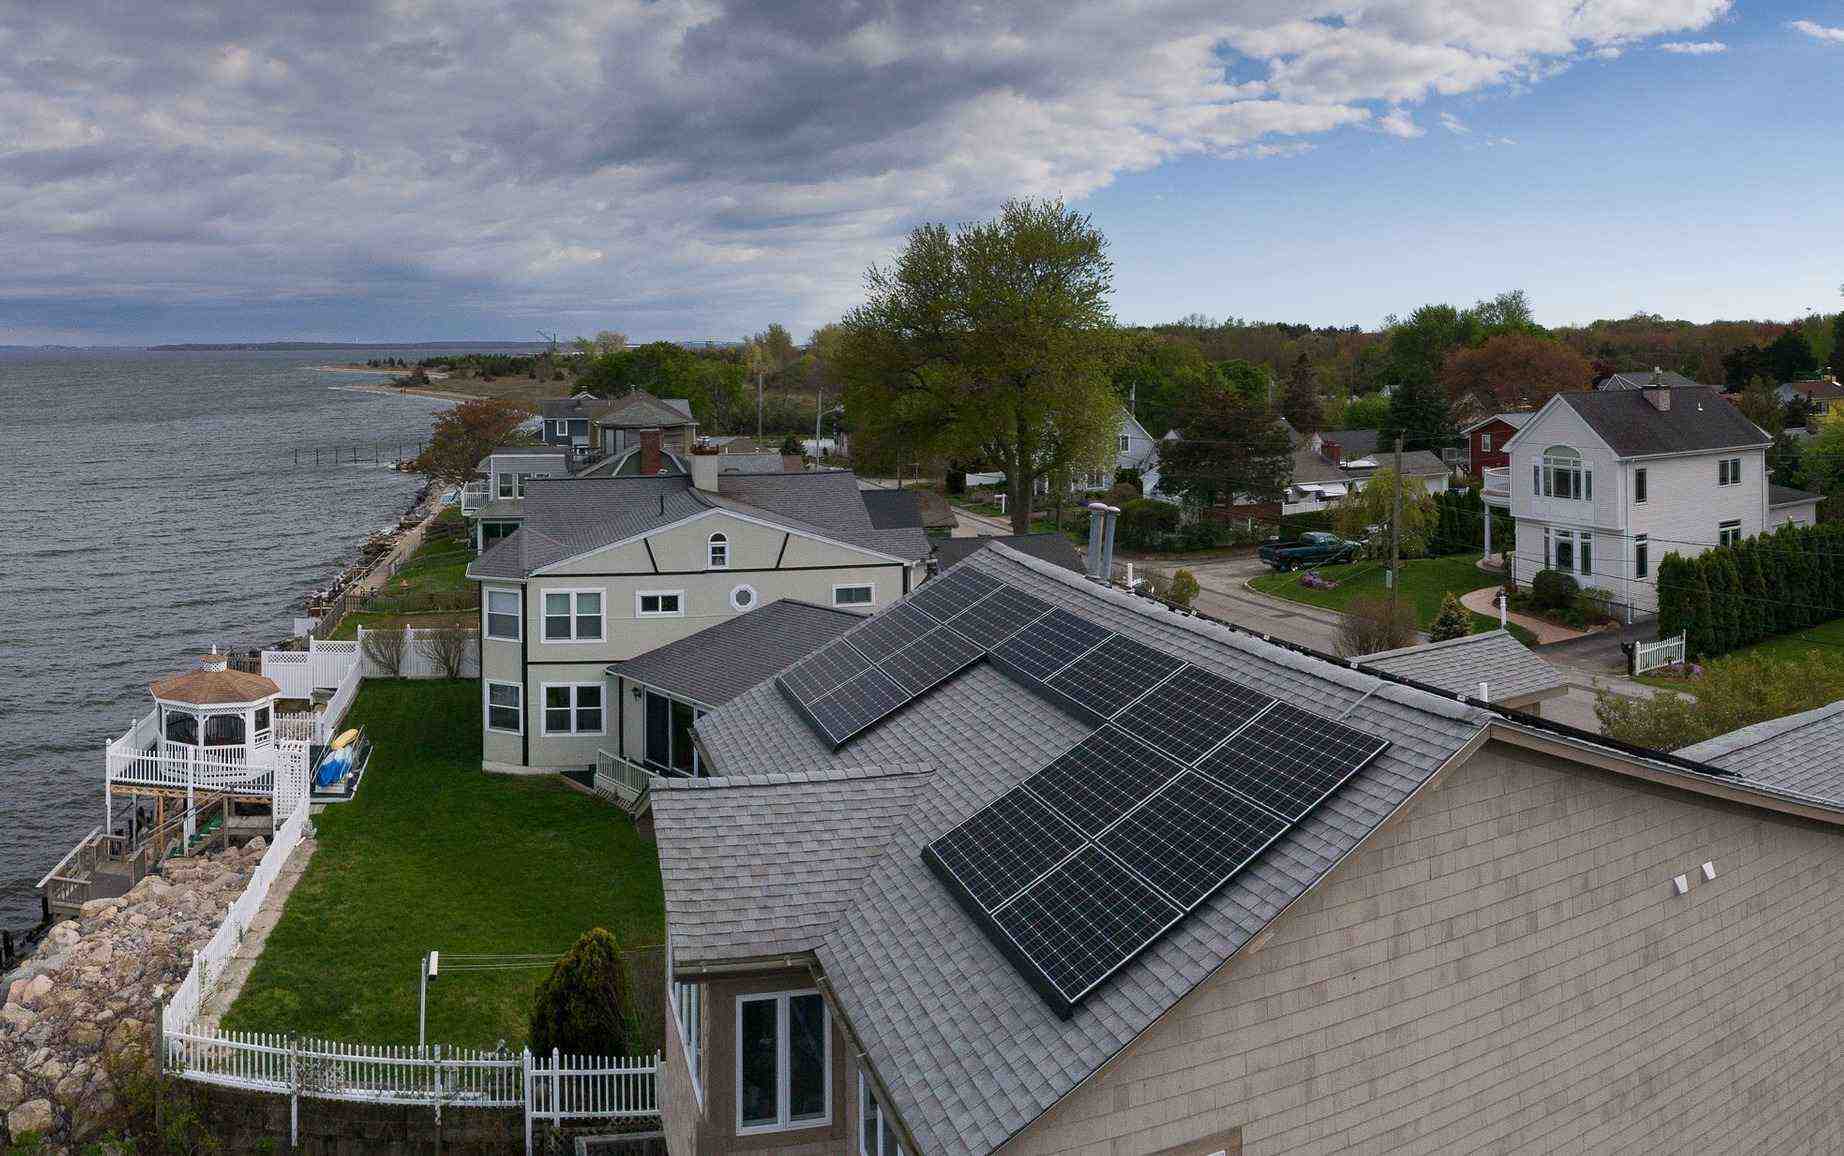 How many solar panels do I need to run a 3 bedroom house?